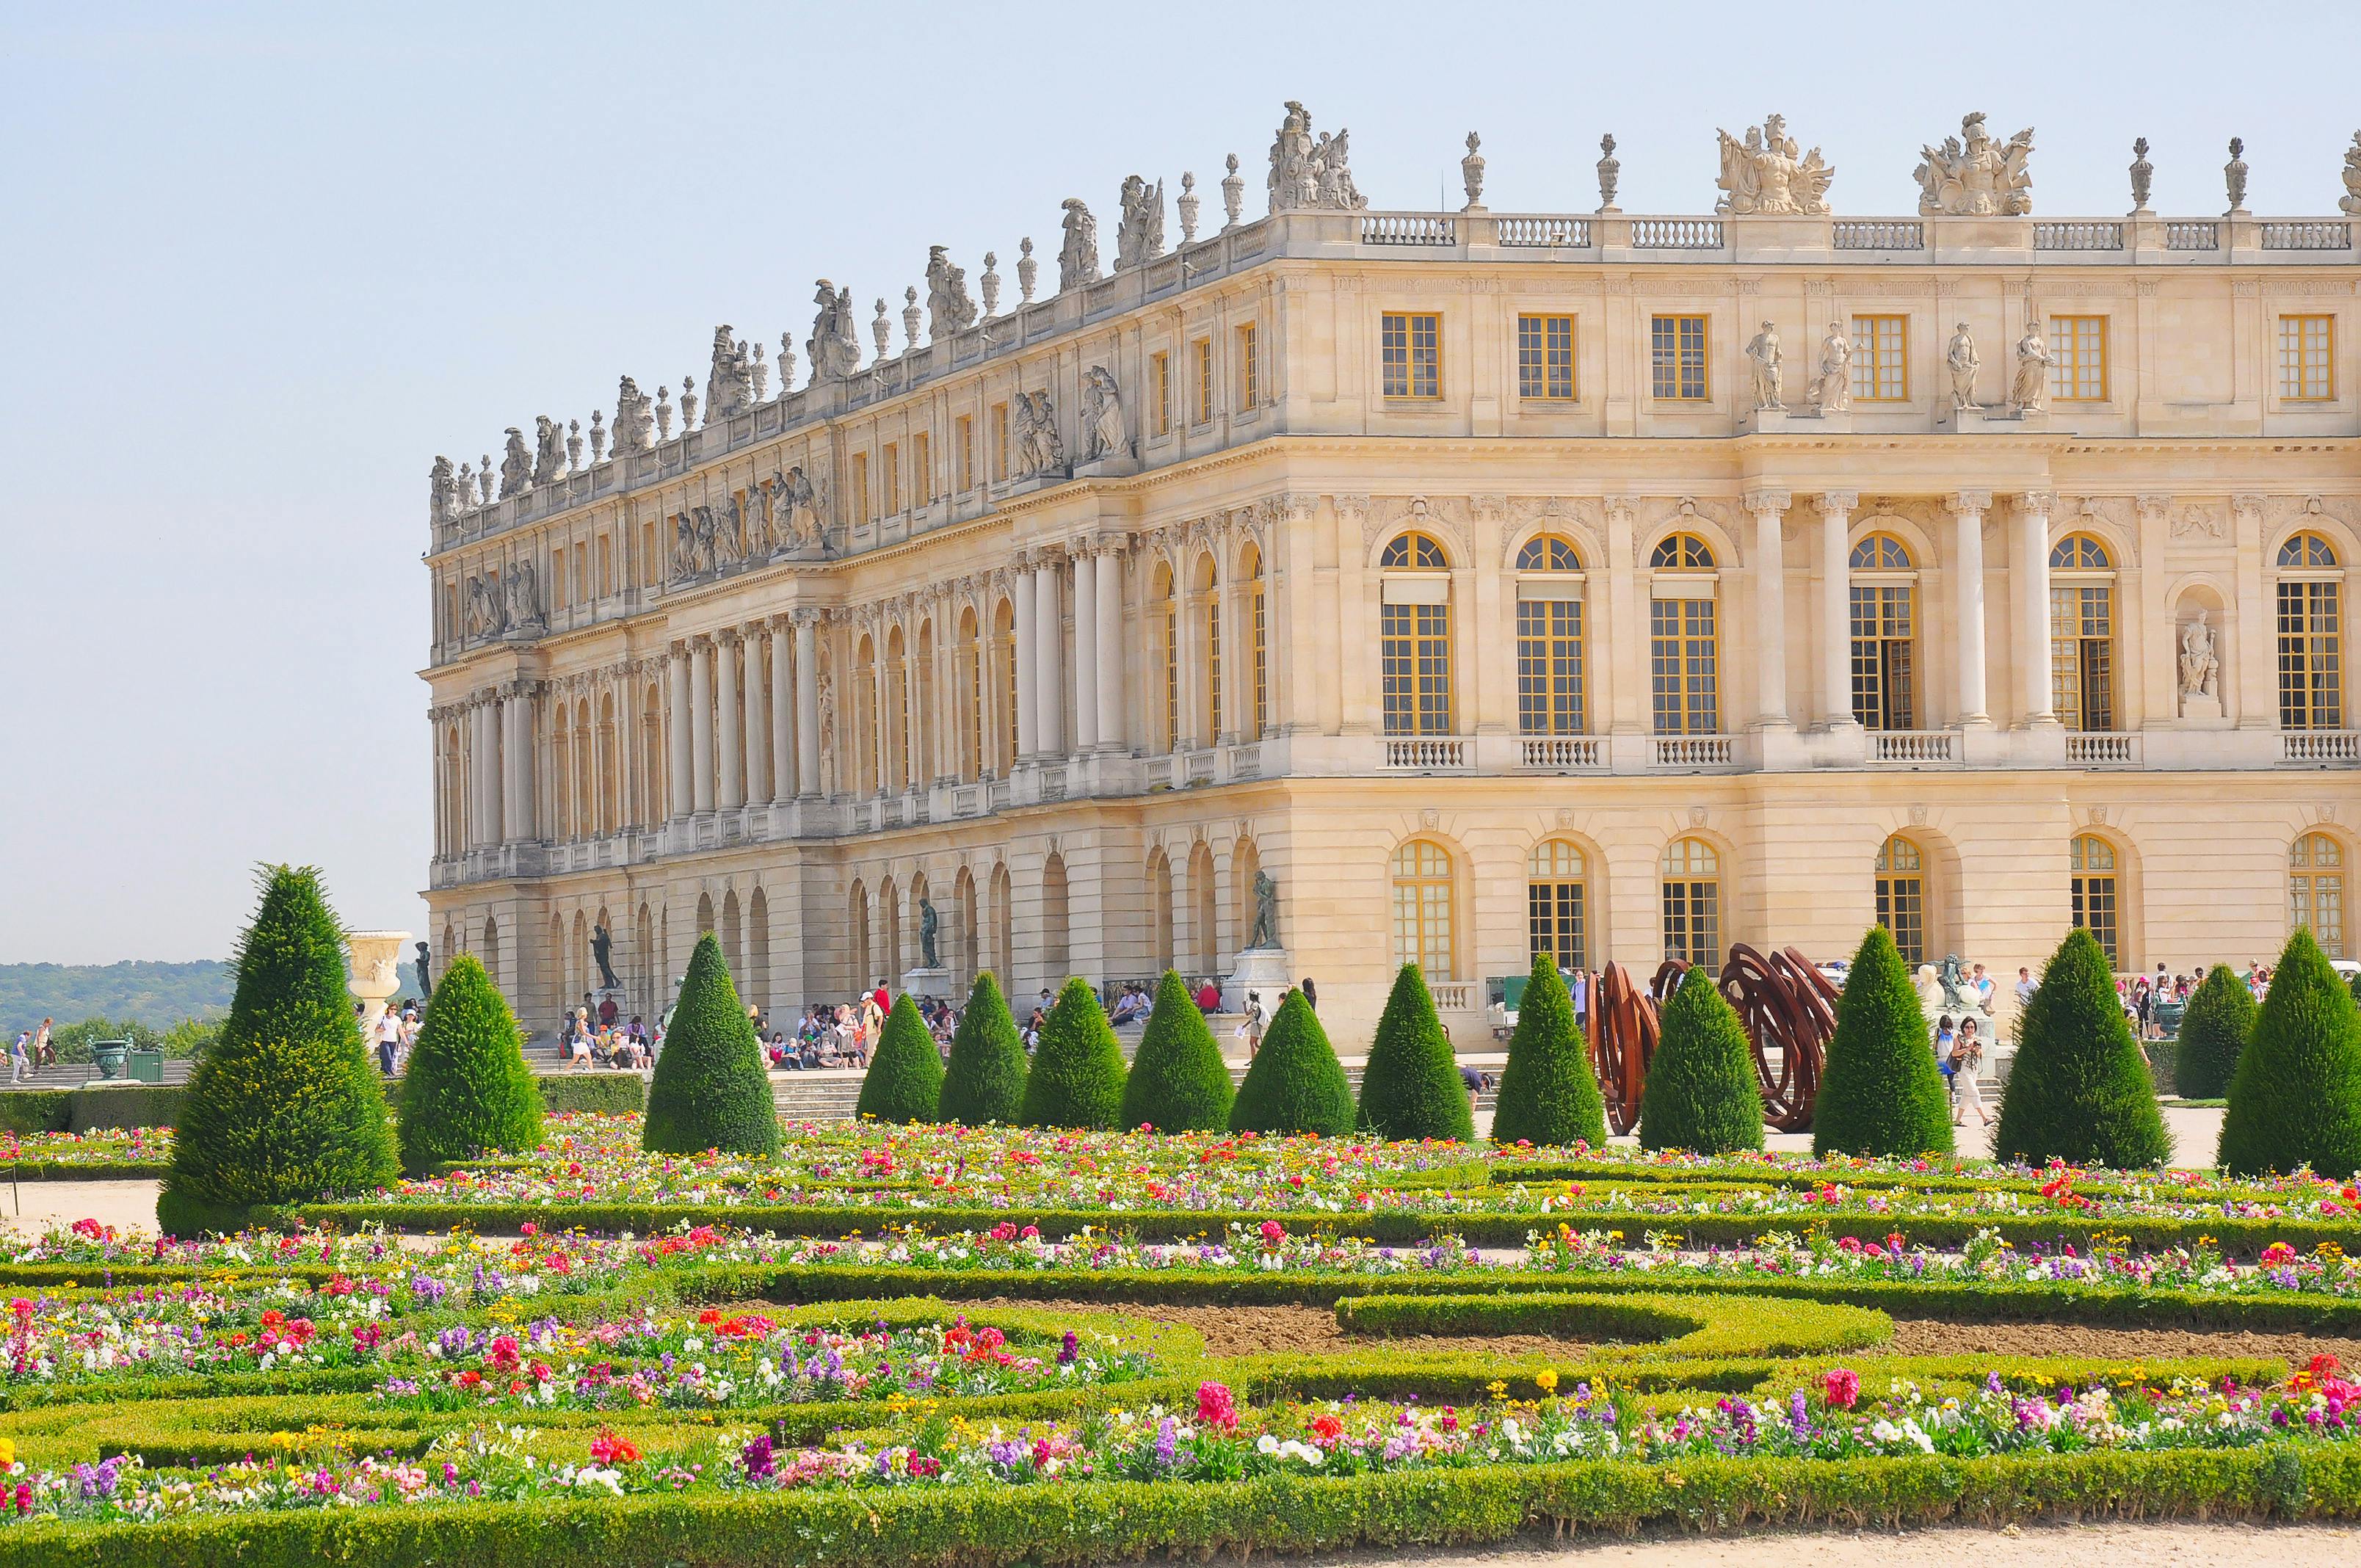 Visita guiada pelo Palácio de Versalhes e por Giverny com transporte e almoço